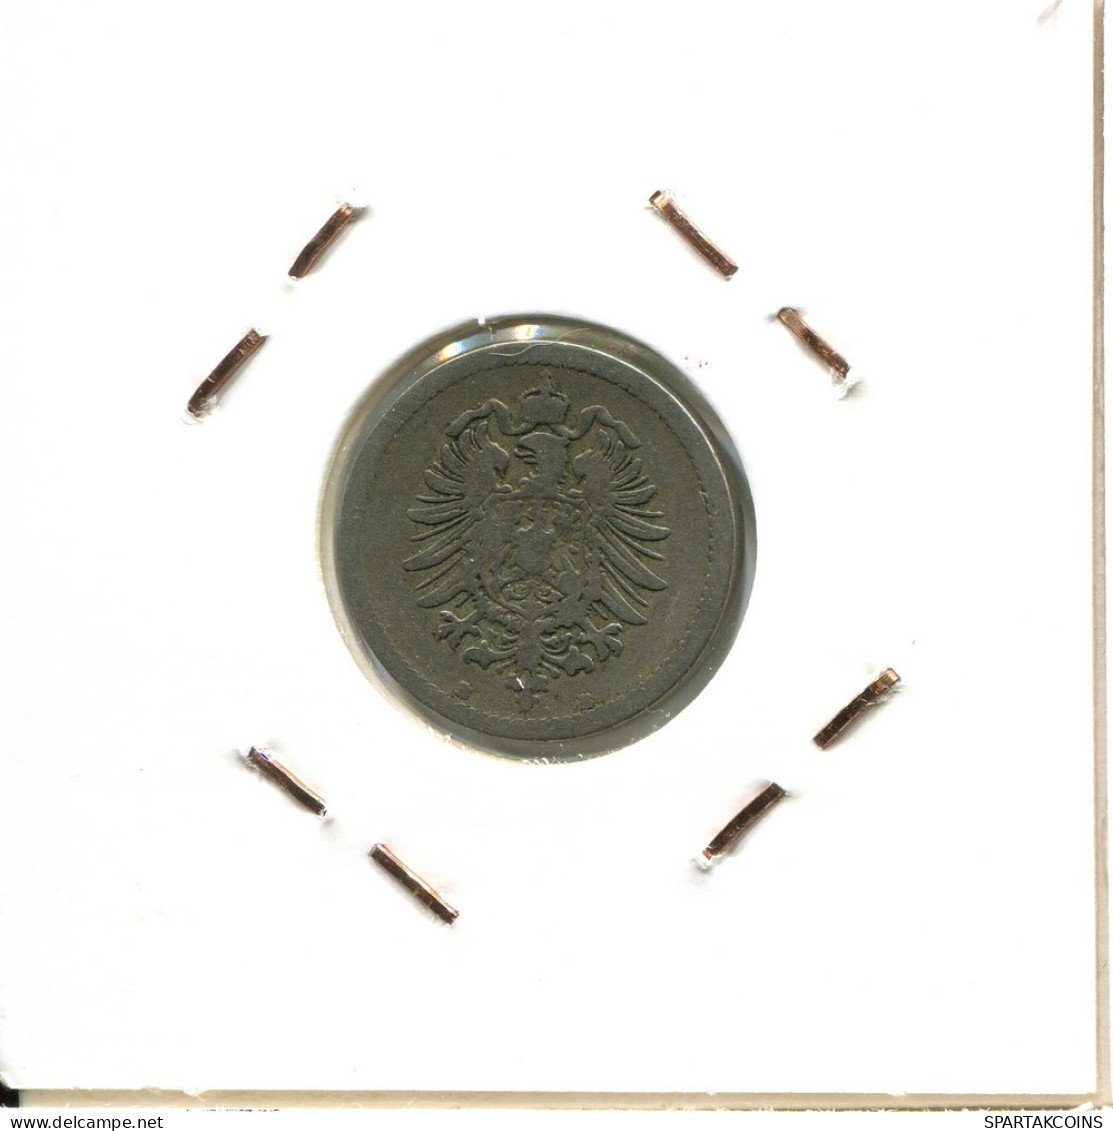 5 PFENNIG 1875 B ALEMANIA Moneda GERMANY #DB837.E.A - 5 Pfennig